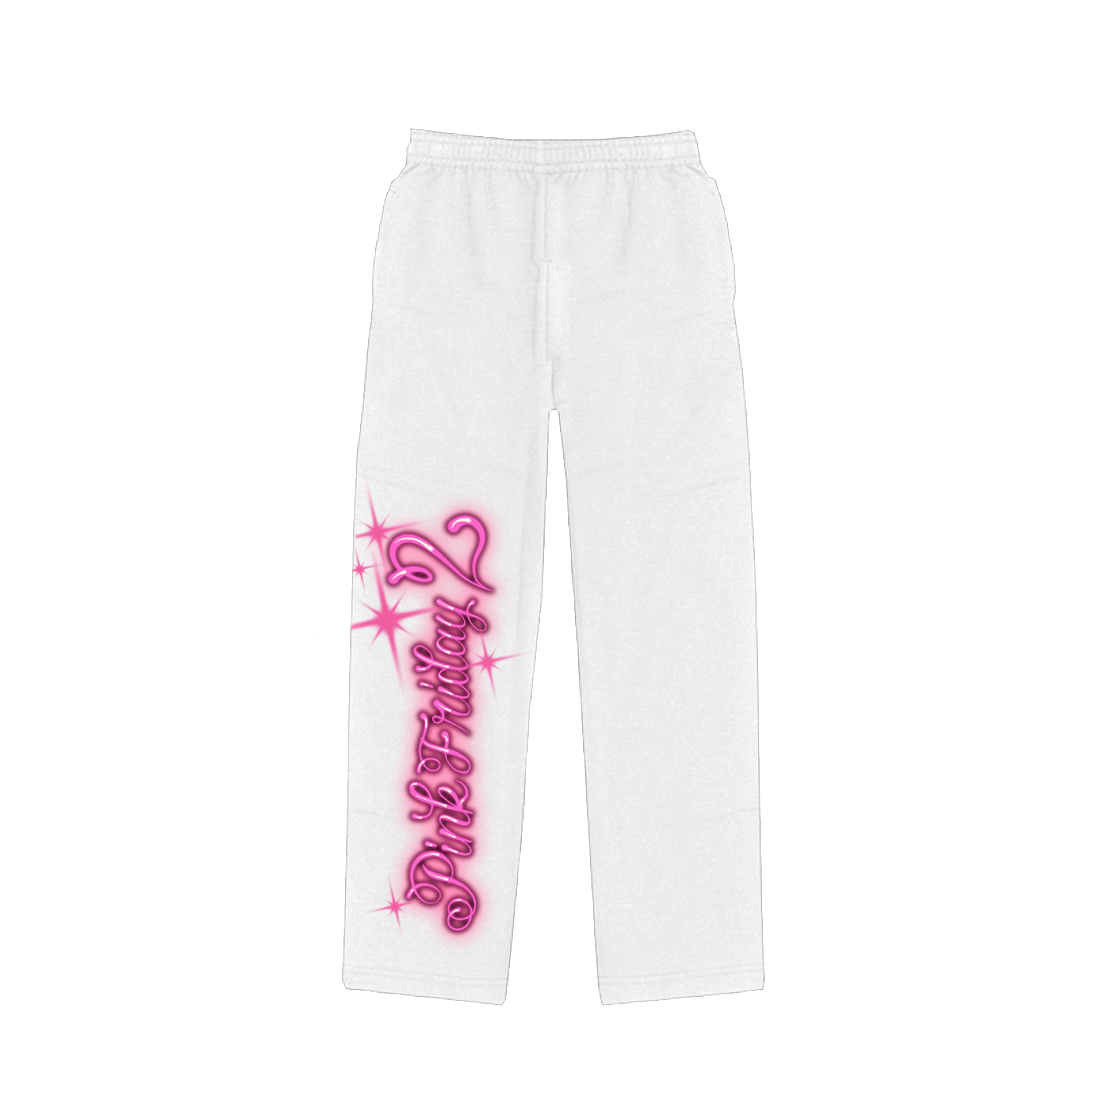 Nicki Minaj - Pink Friday 2 Airbrush Sweatpants